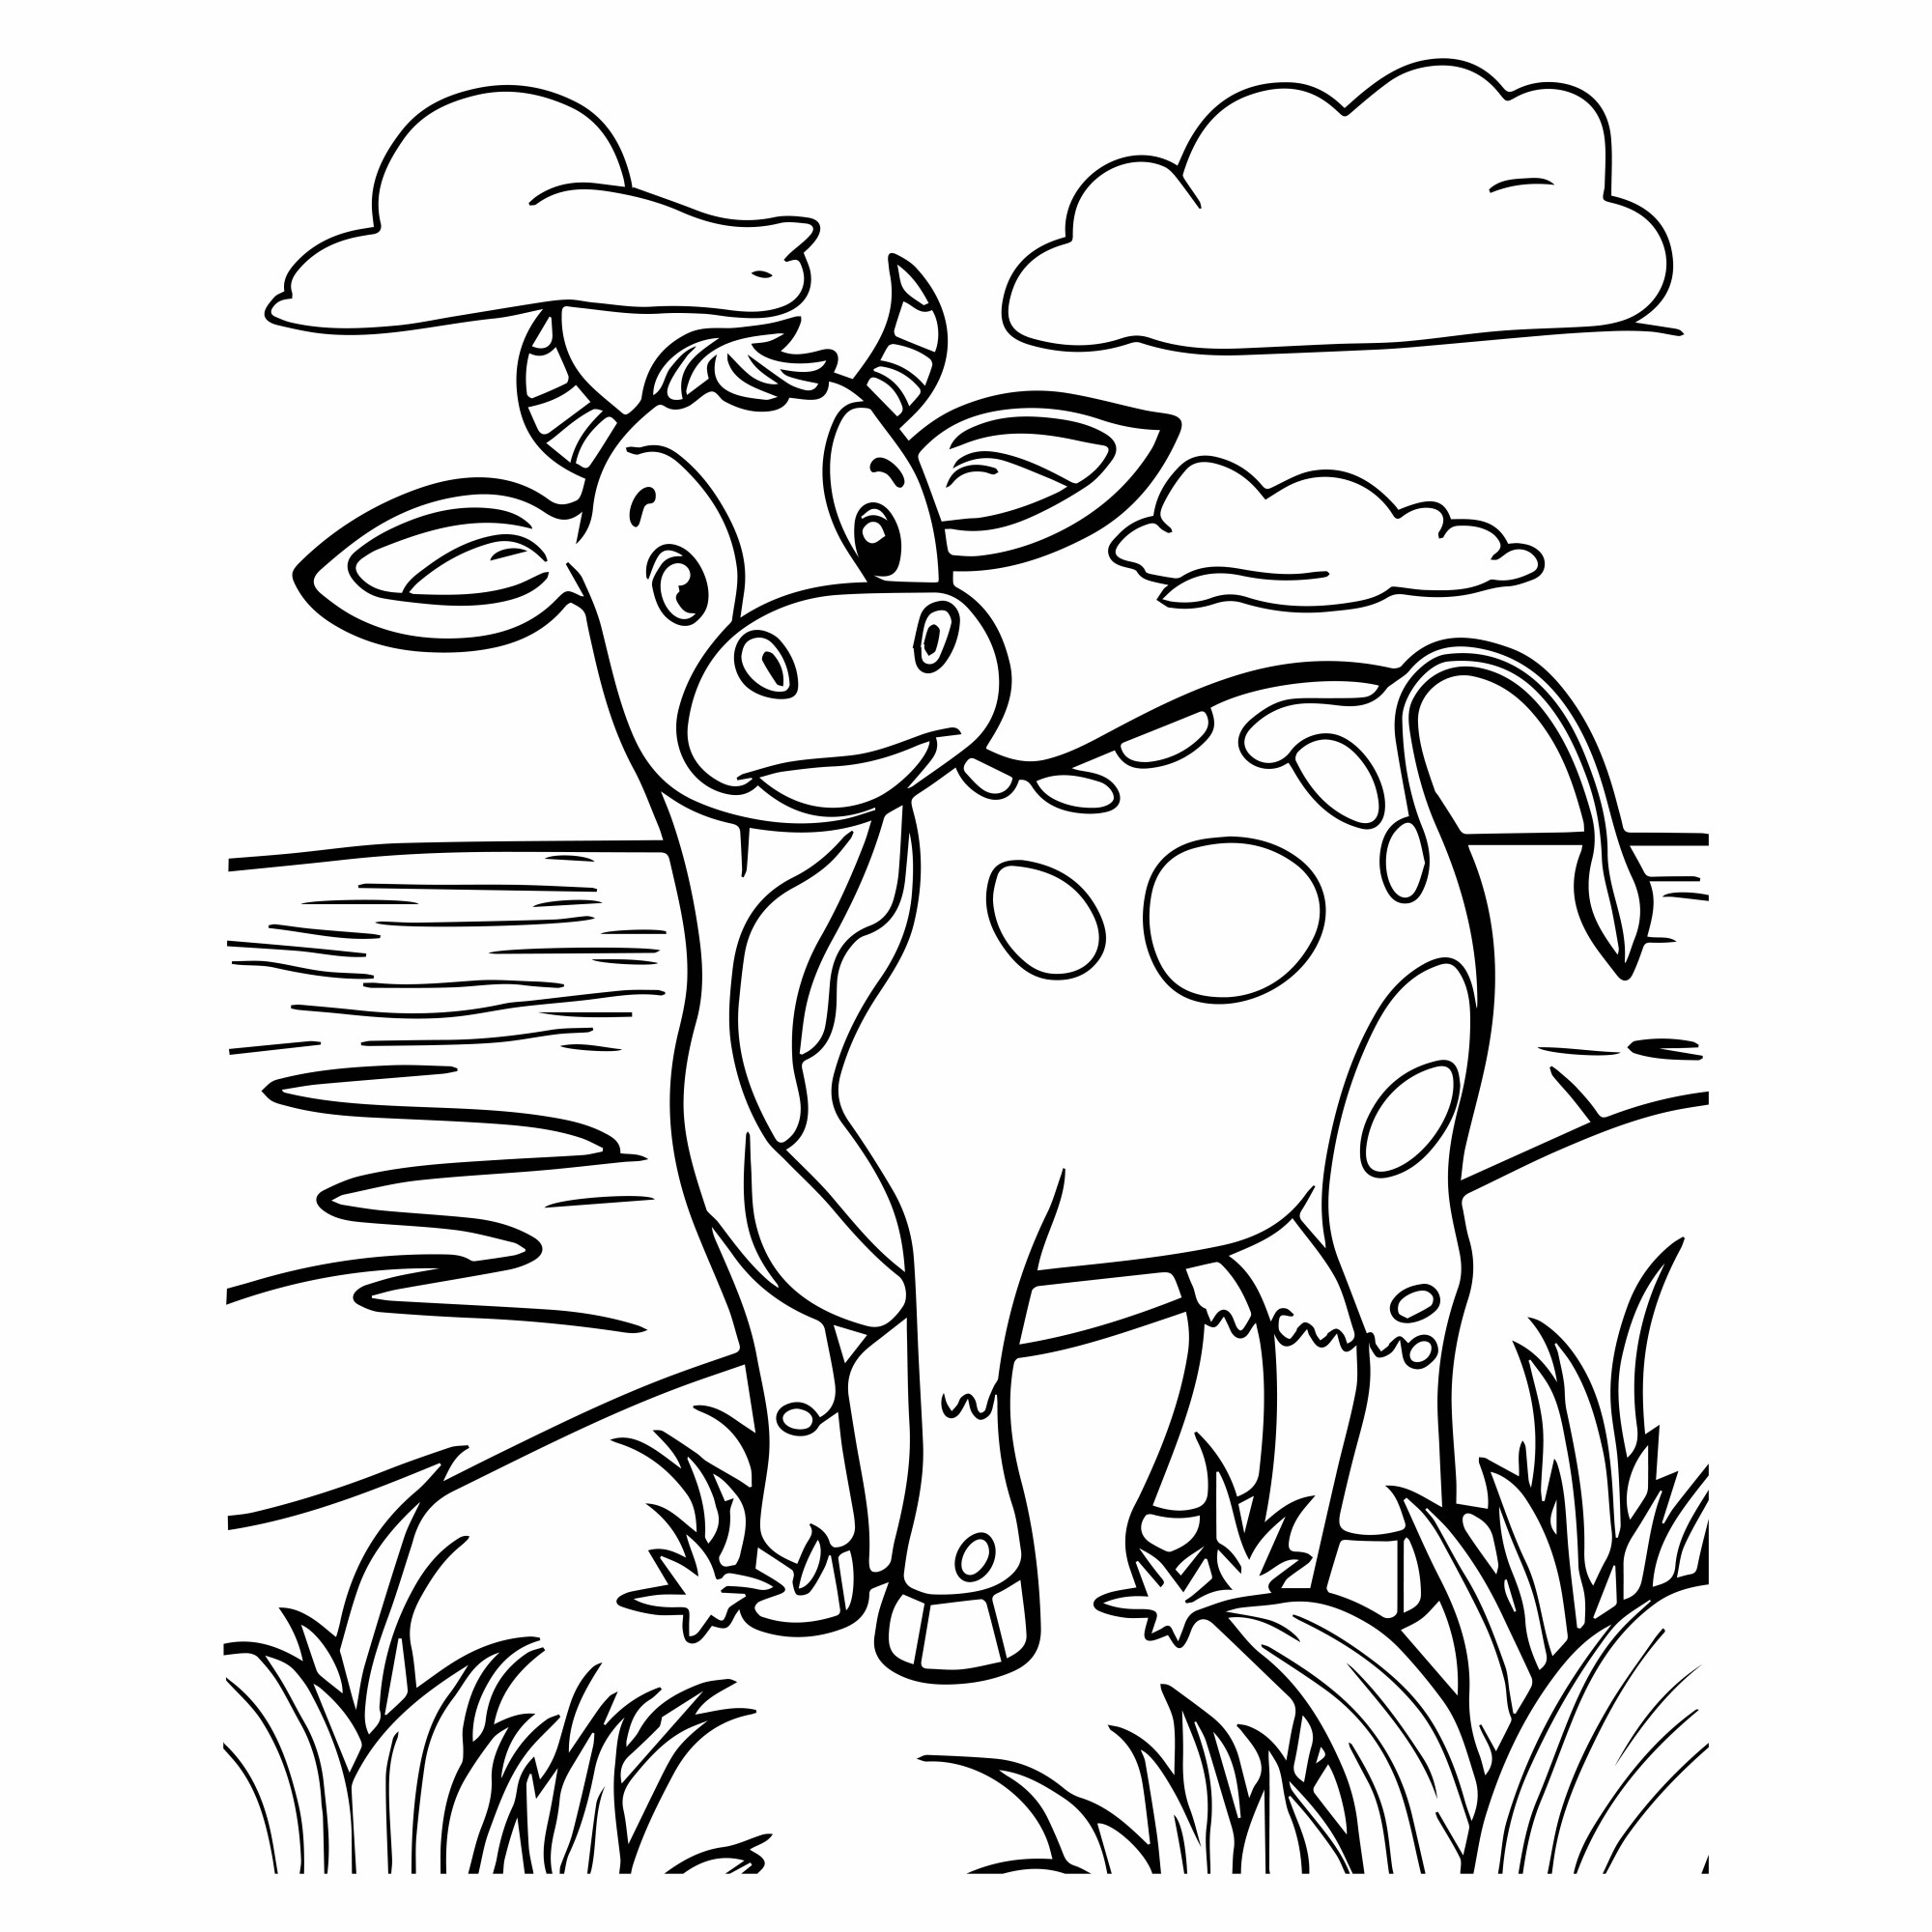 Раскраска для детей: корова гуляет по берегу реки